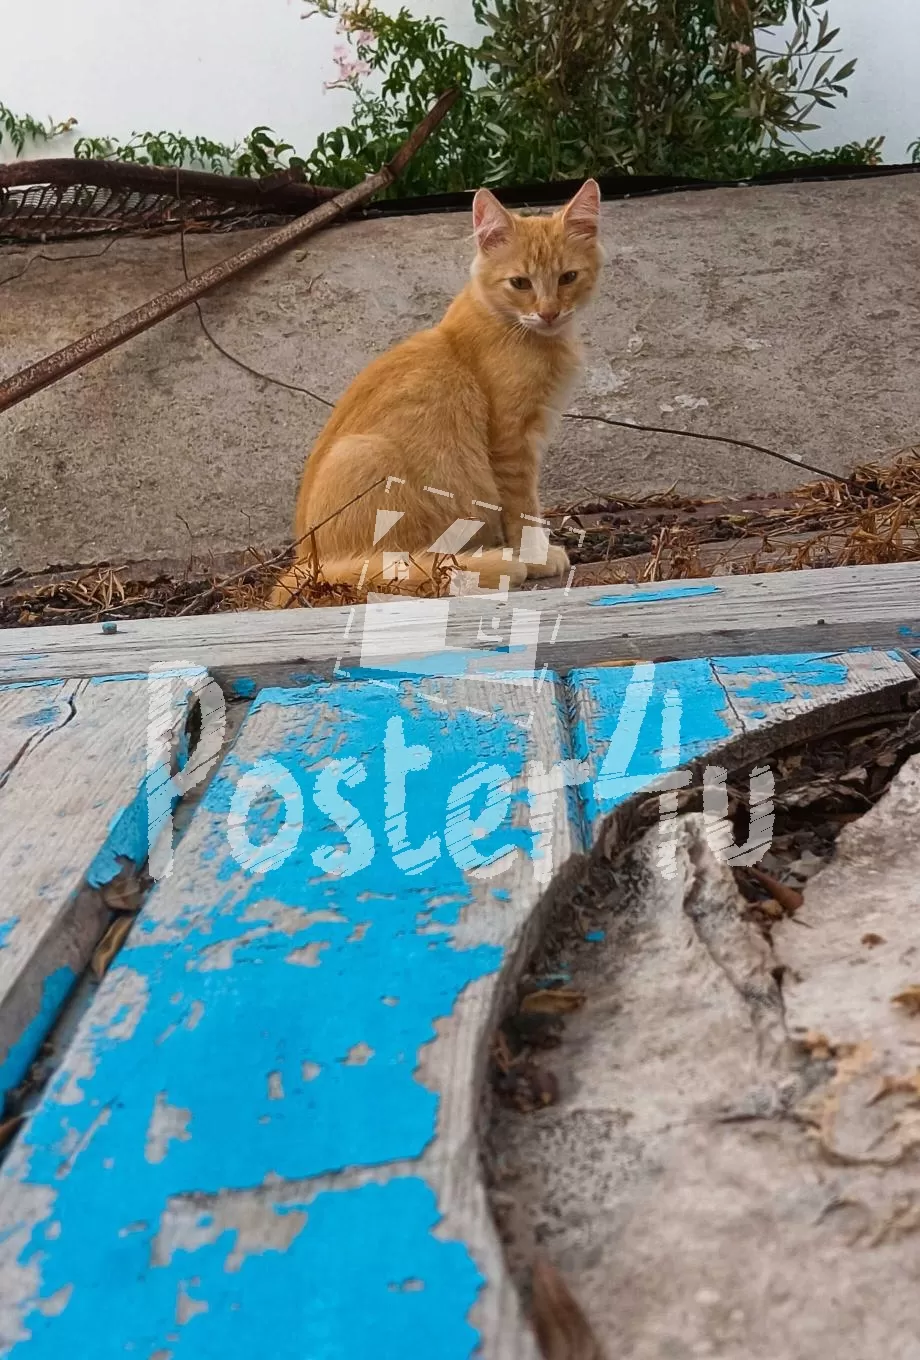 Santorini Stray Cat Poster4u.gr